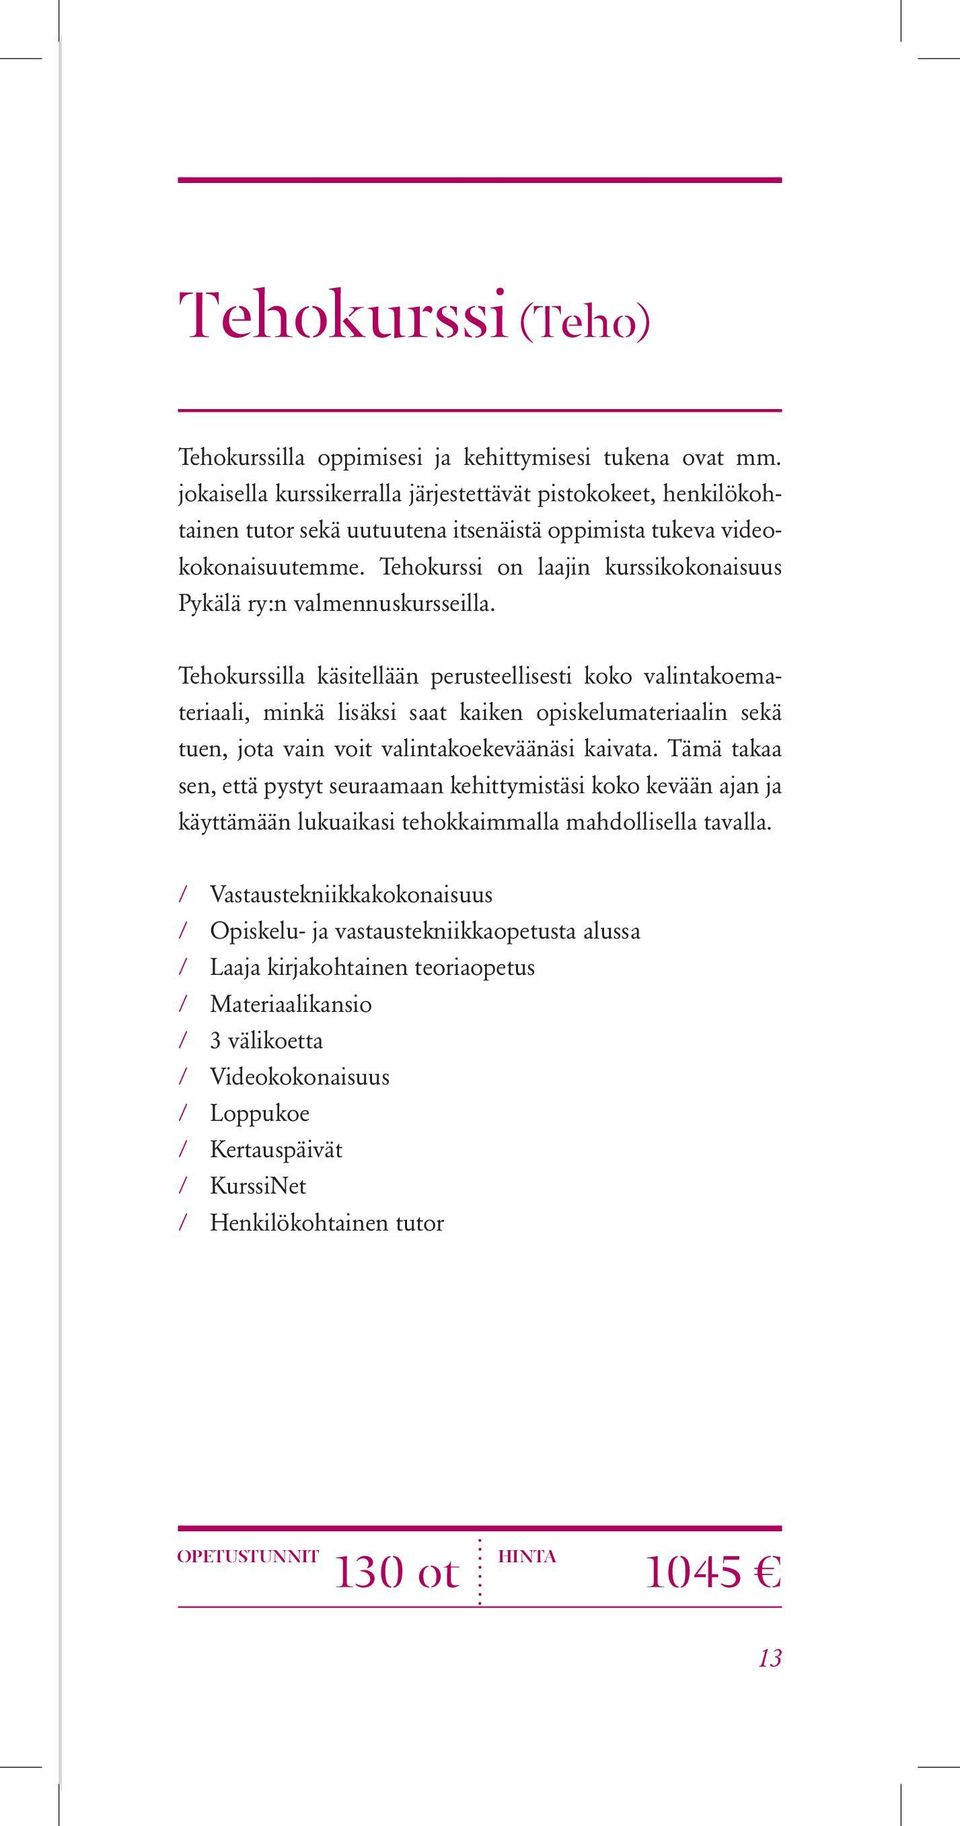 Tehokurssi on laajin kurssikokonaisuus Pykälä ry:n valmennuskursseilla.